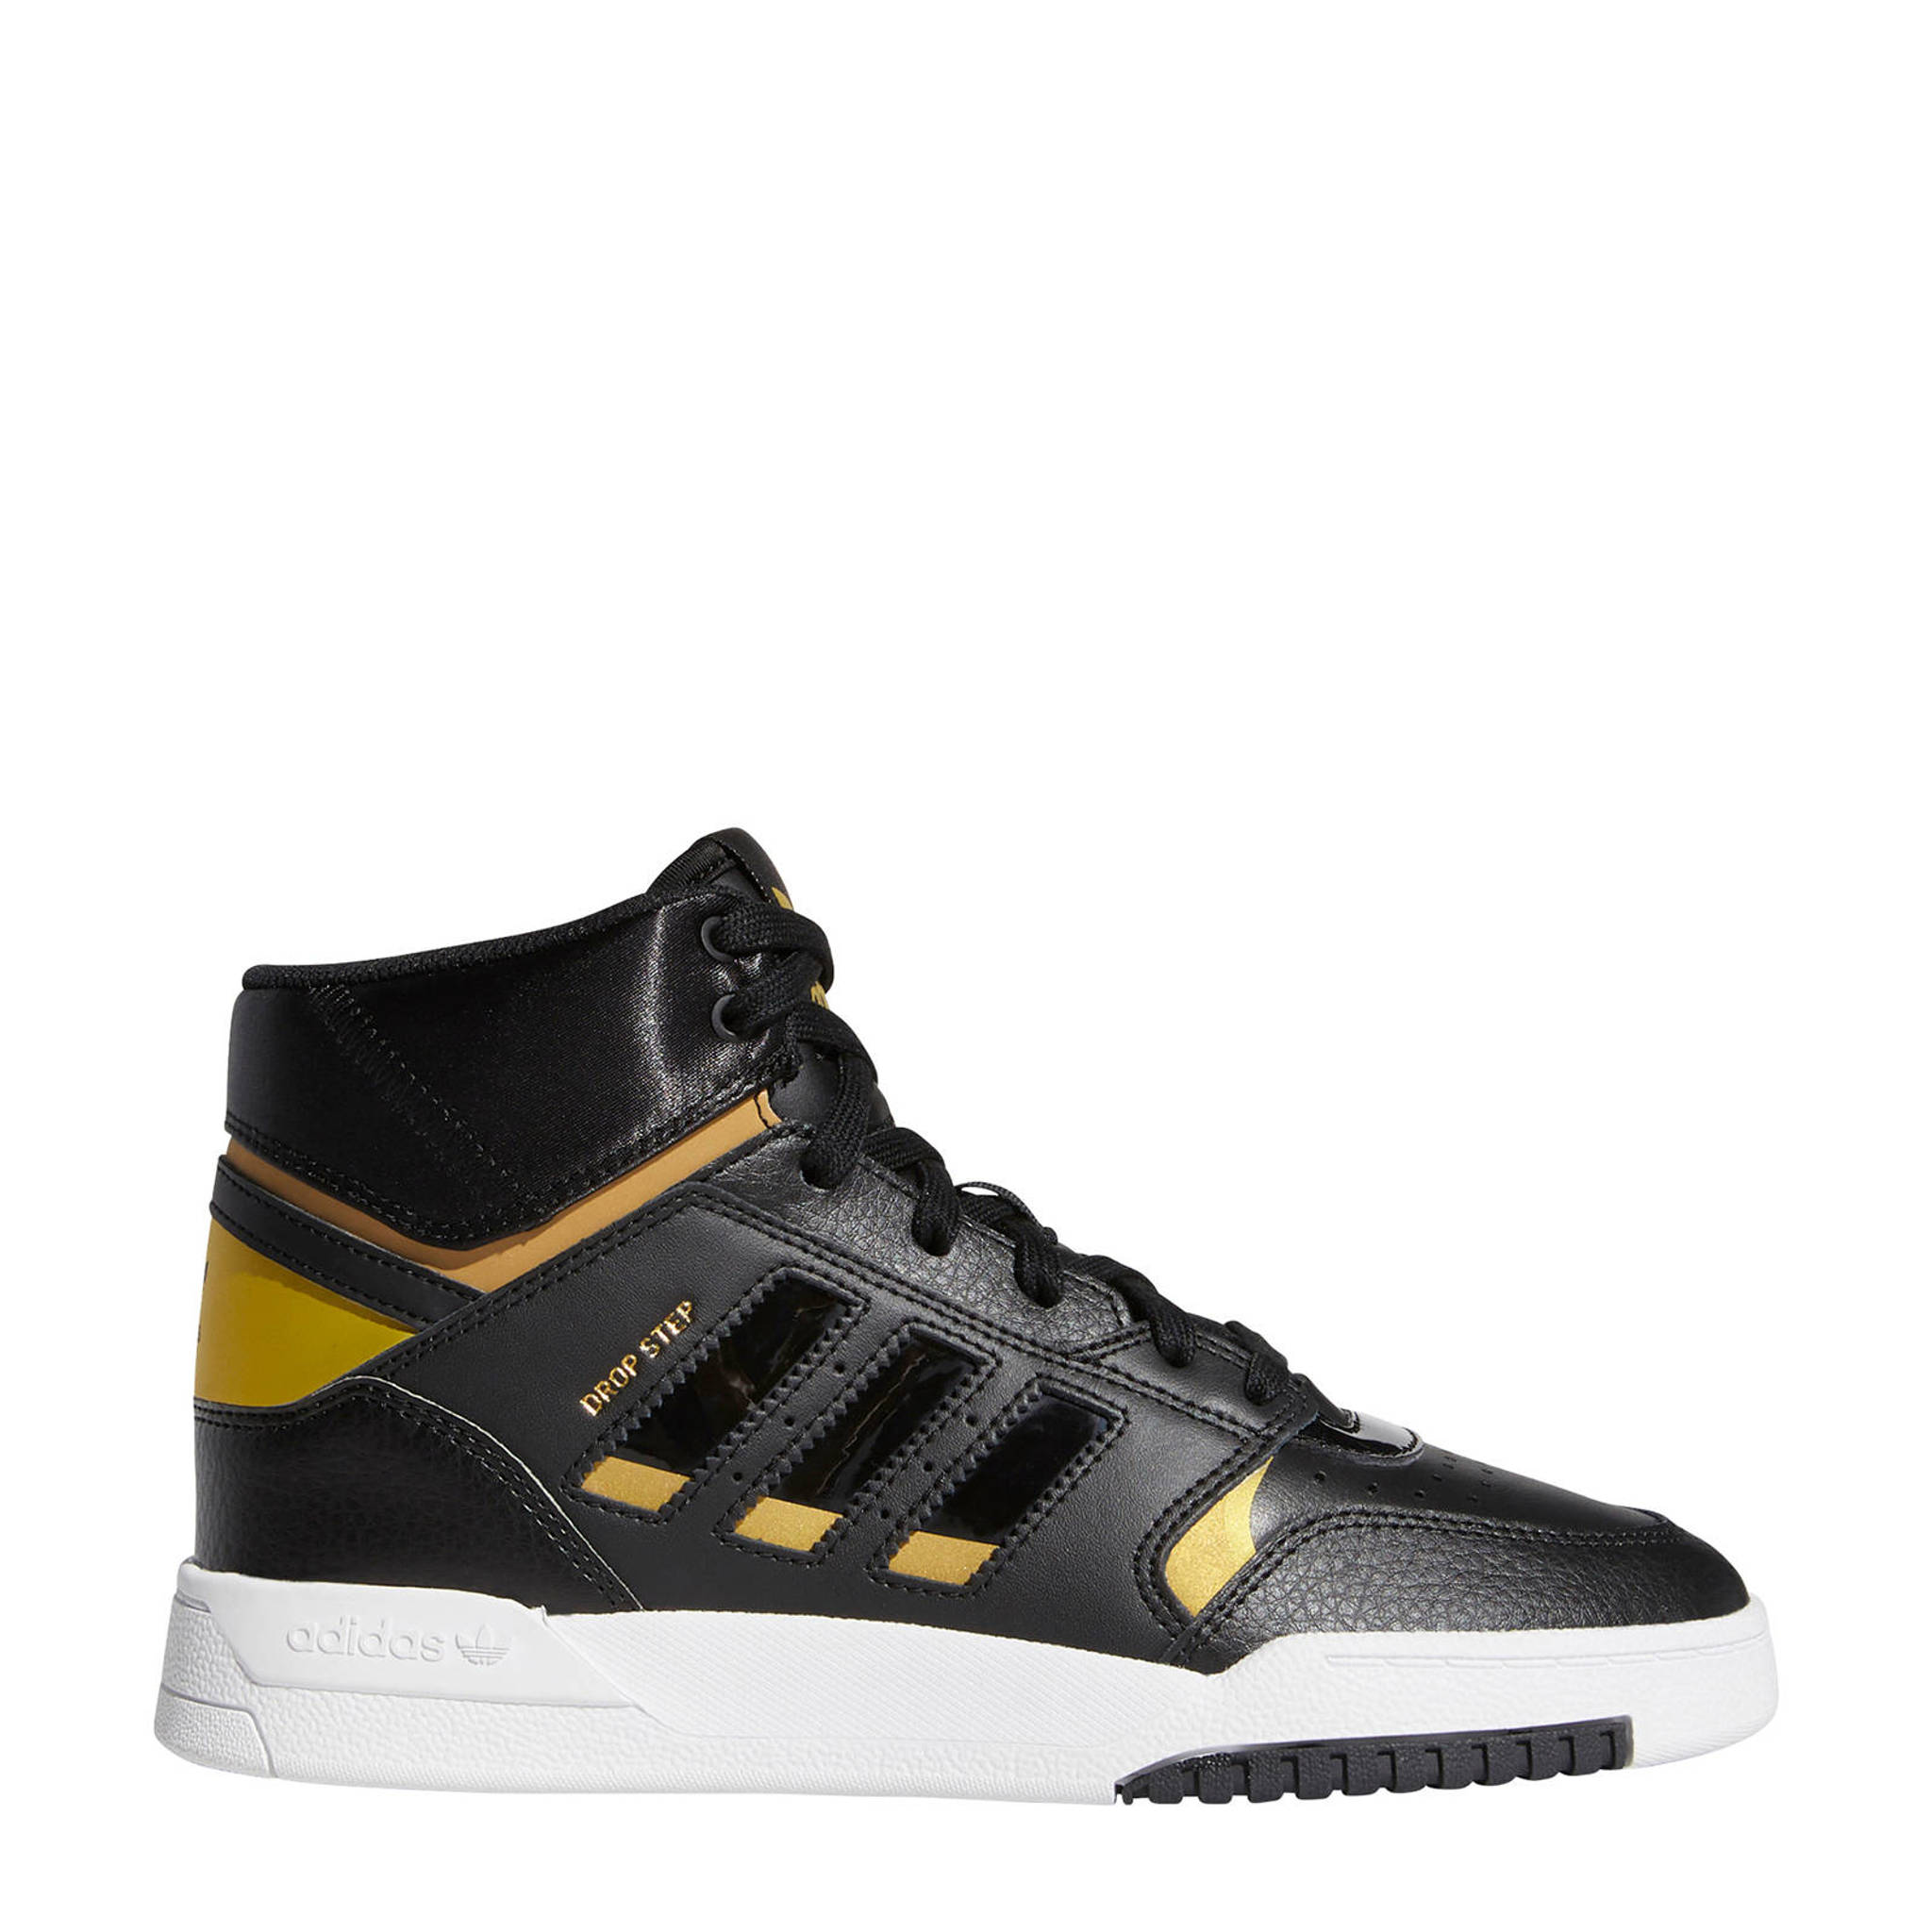 Ongebruikt adidas Originals Drop Step leren sneakers zwart/goud metallic PJ-34